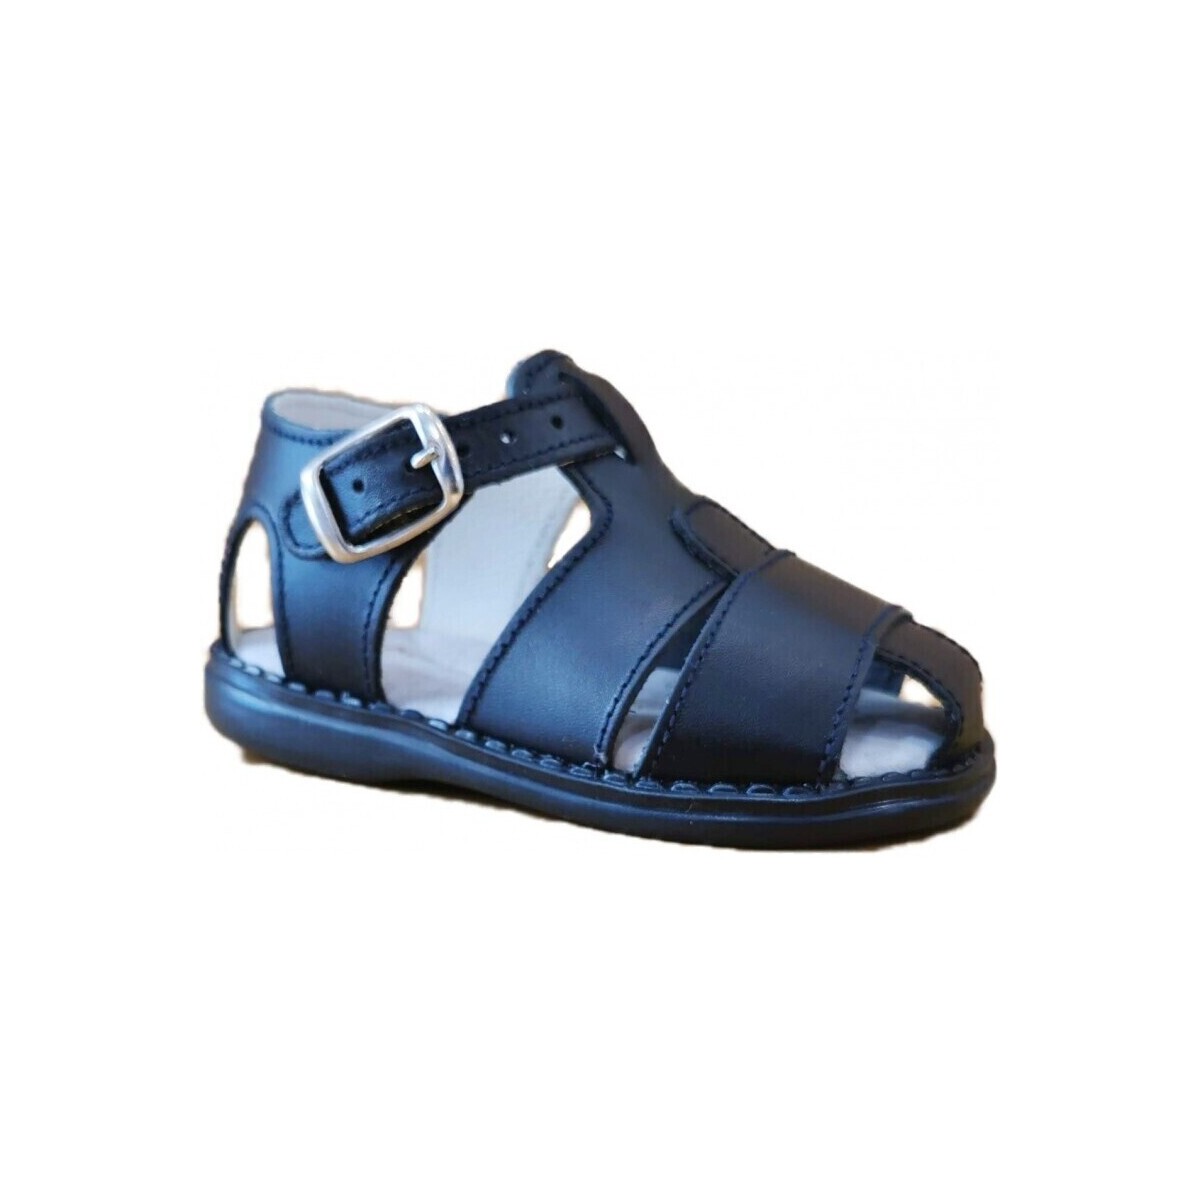 Topánky Sandále Colores 25646-15 Námornícka modrá